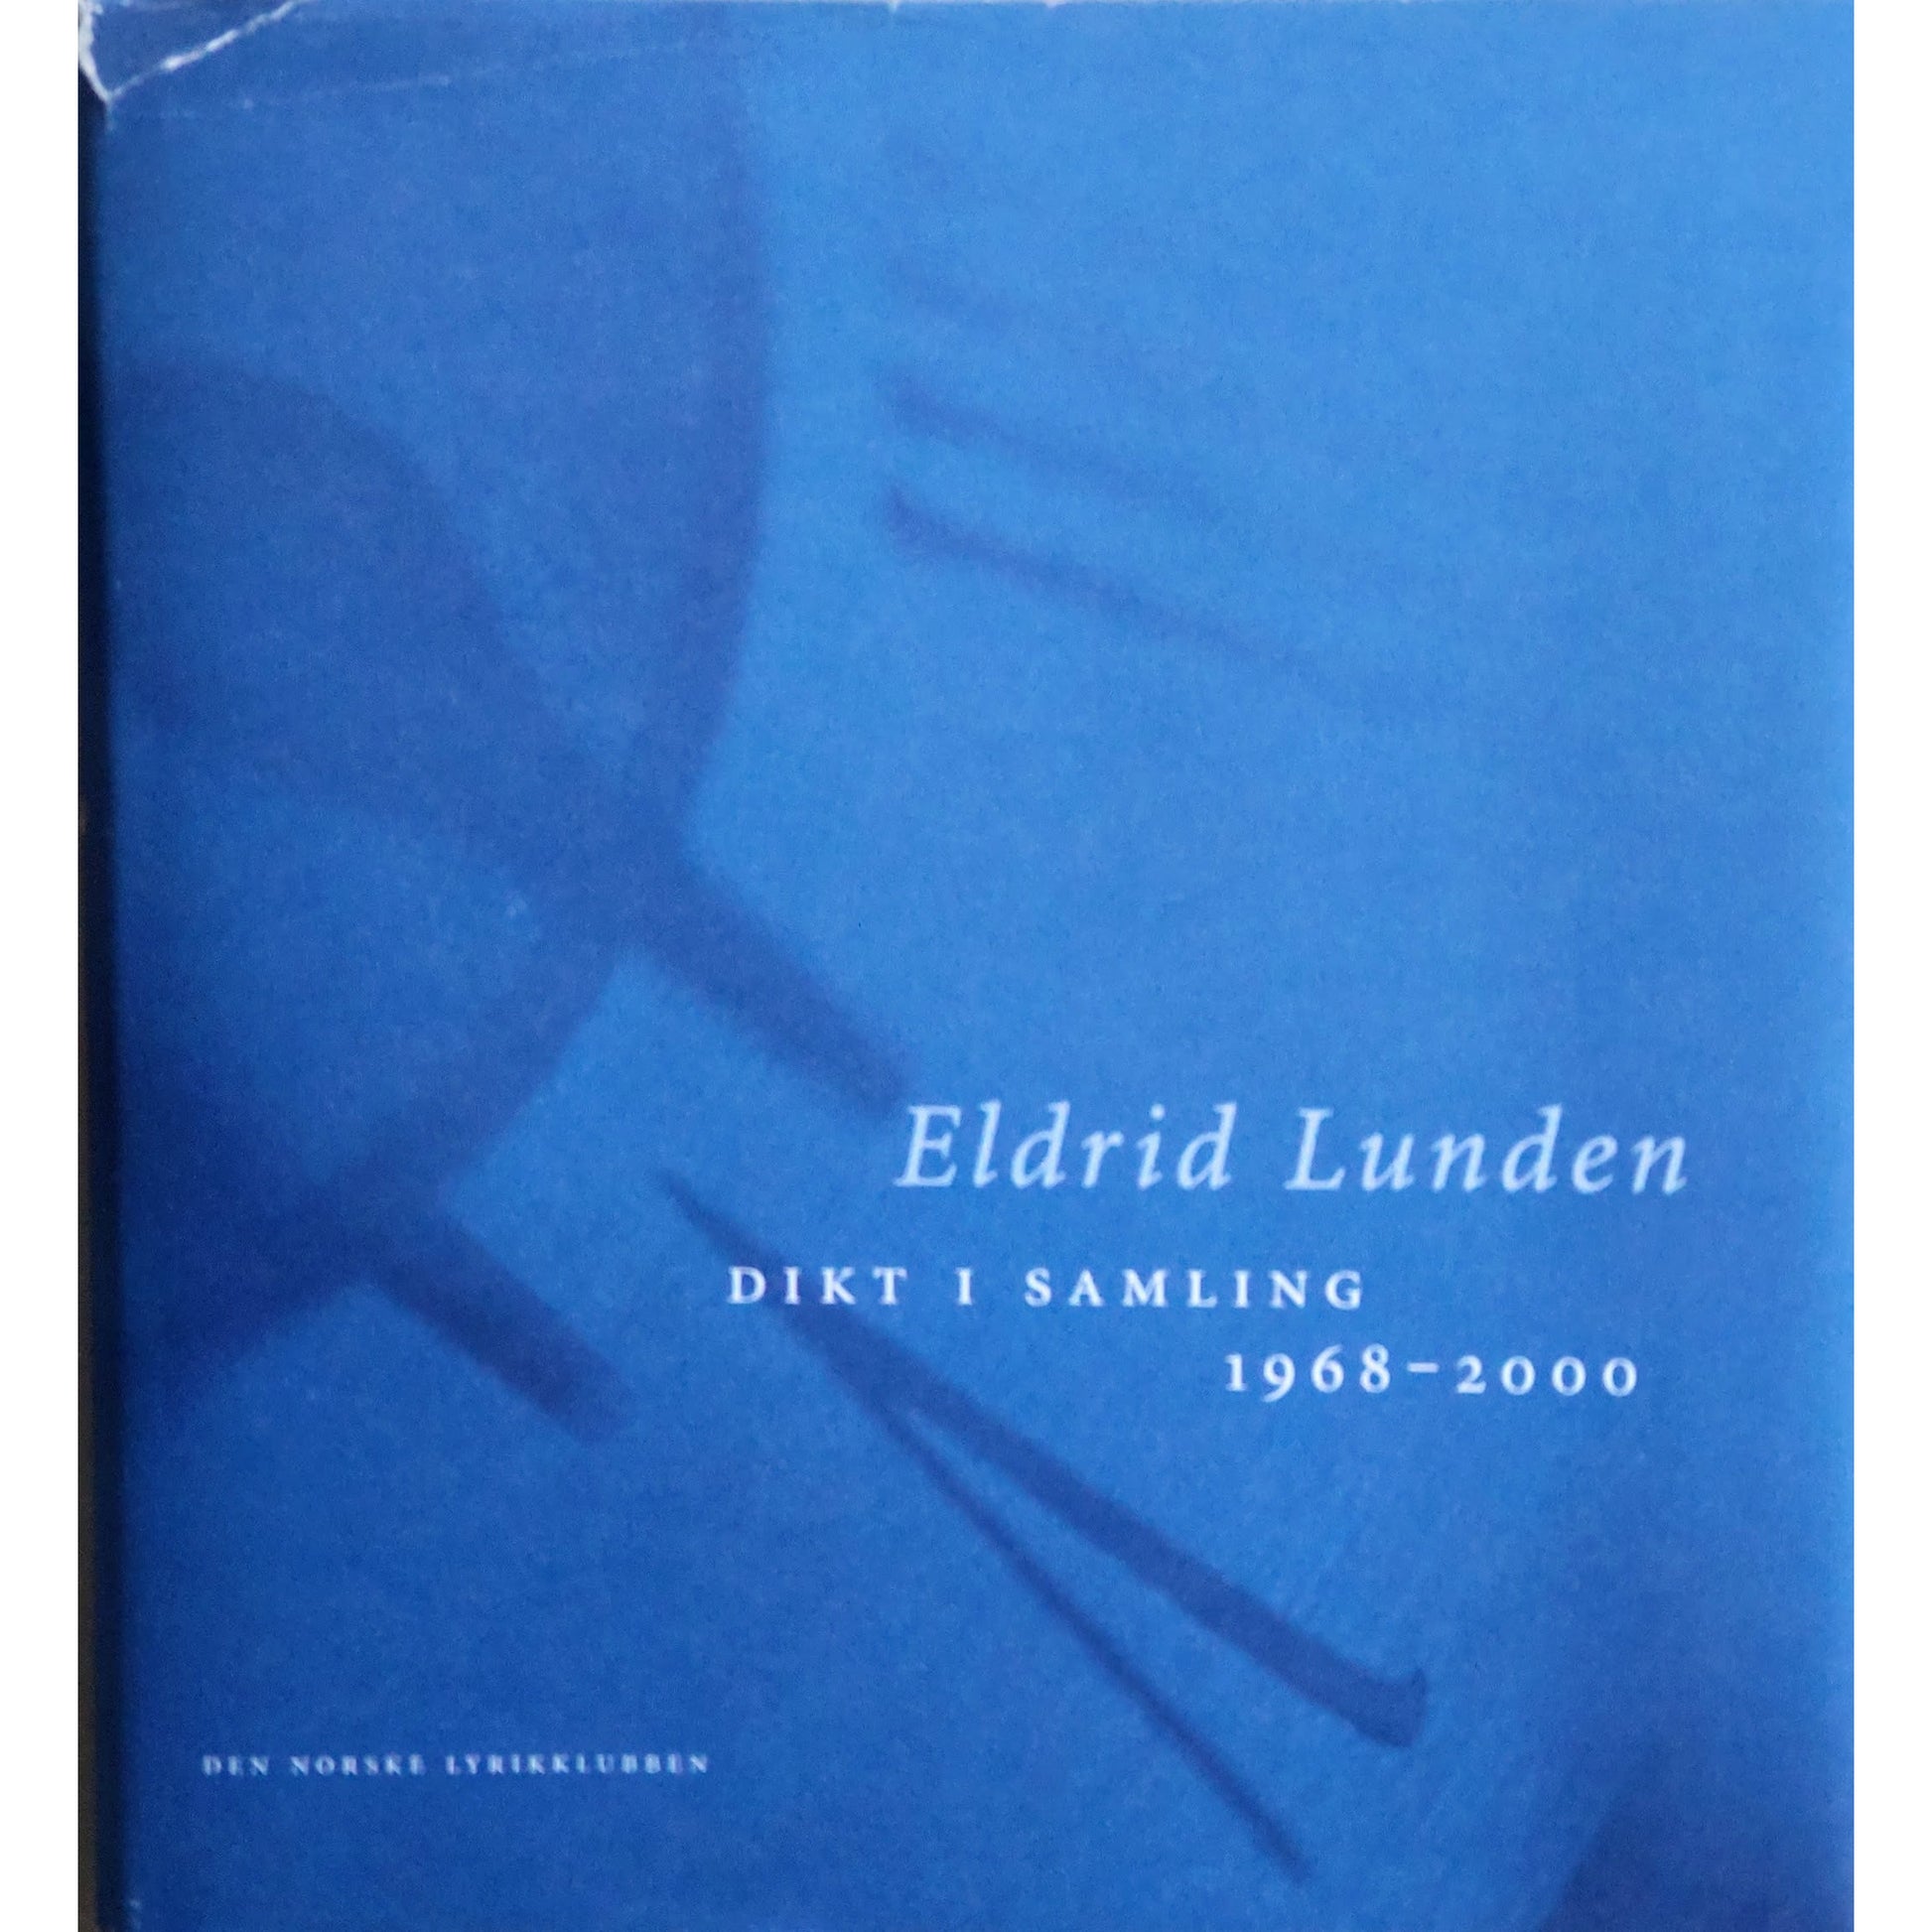 Eldrid Lunden: Dikt i samling 1968 - 2000